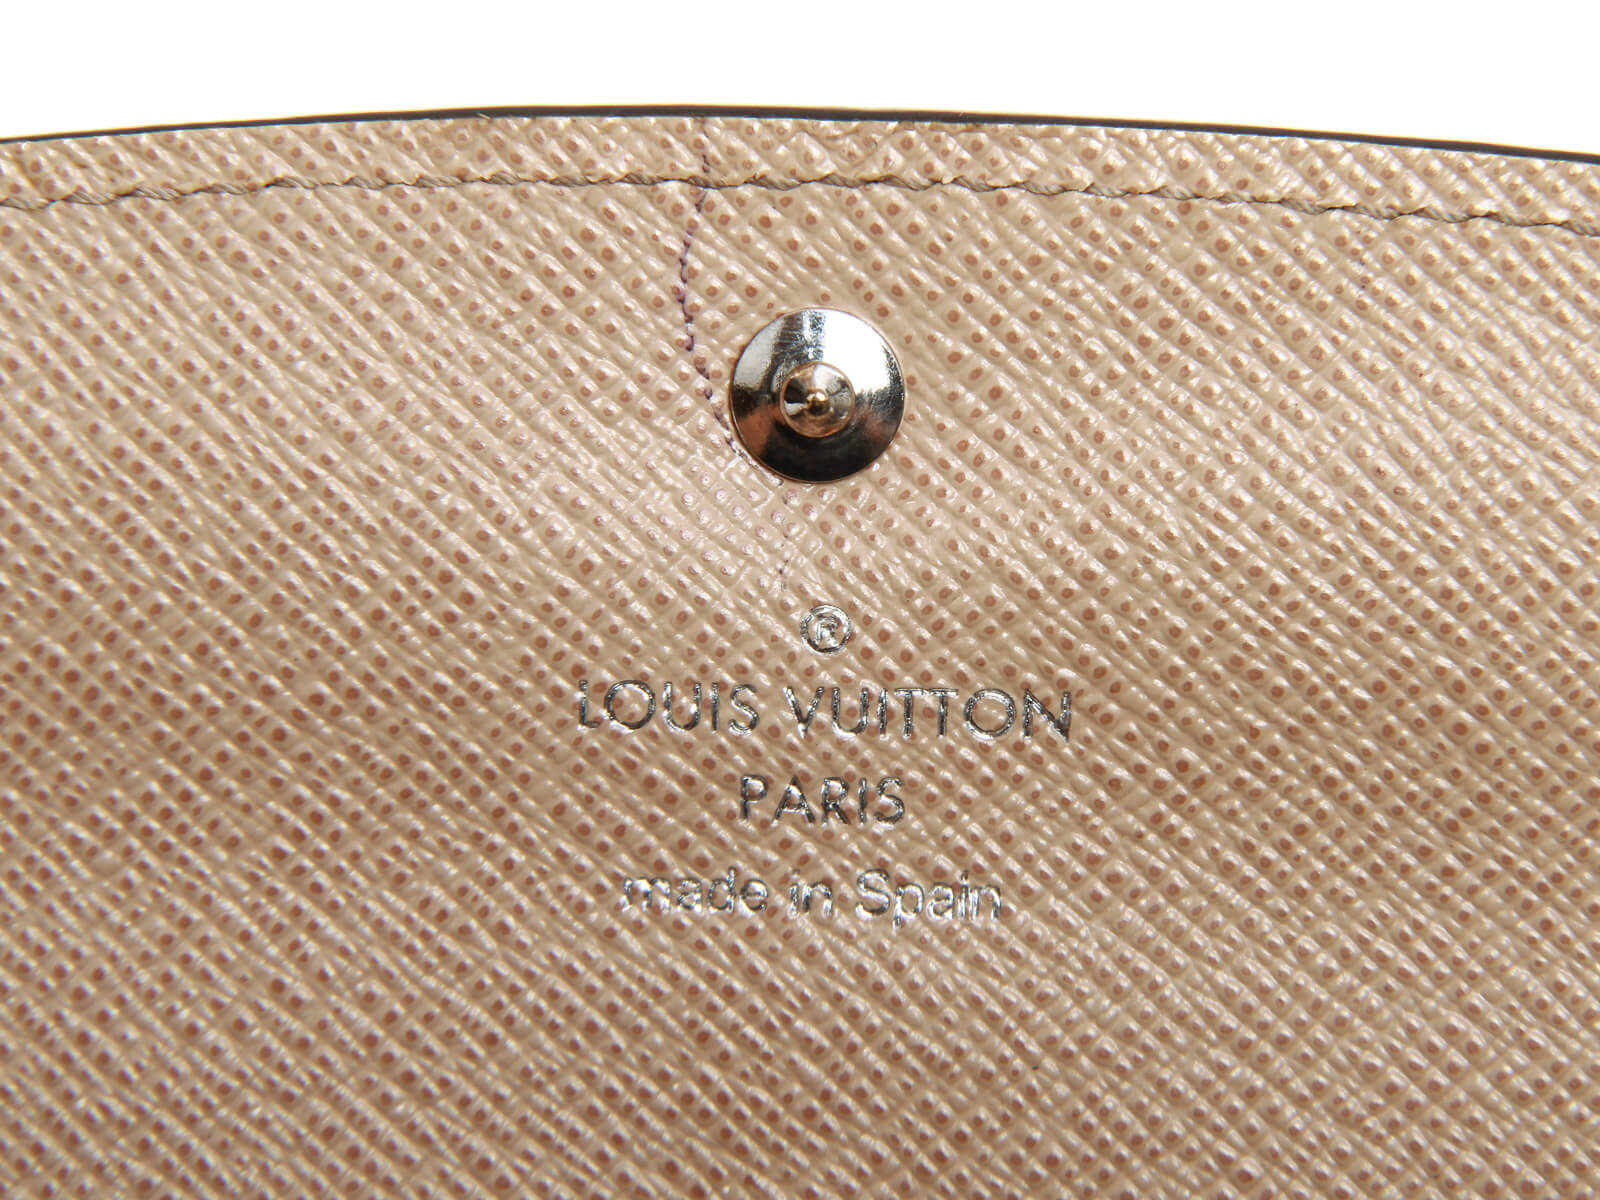 Louis Vuitton Emilie 2015 Epi Leather Long Flap Wallet – Fashion